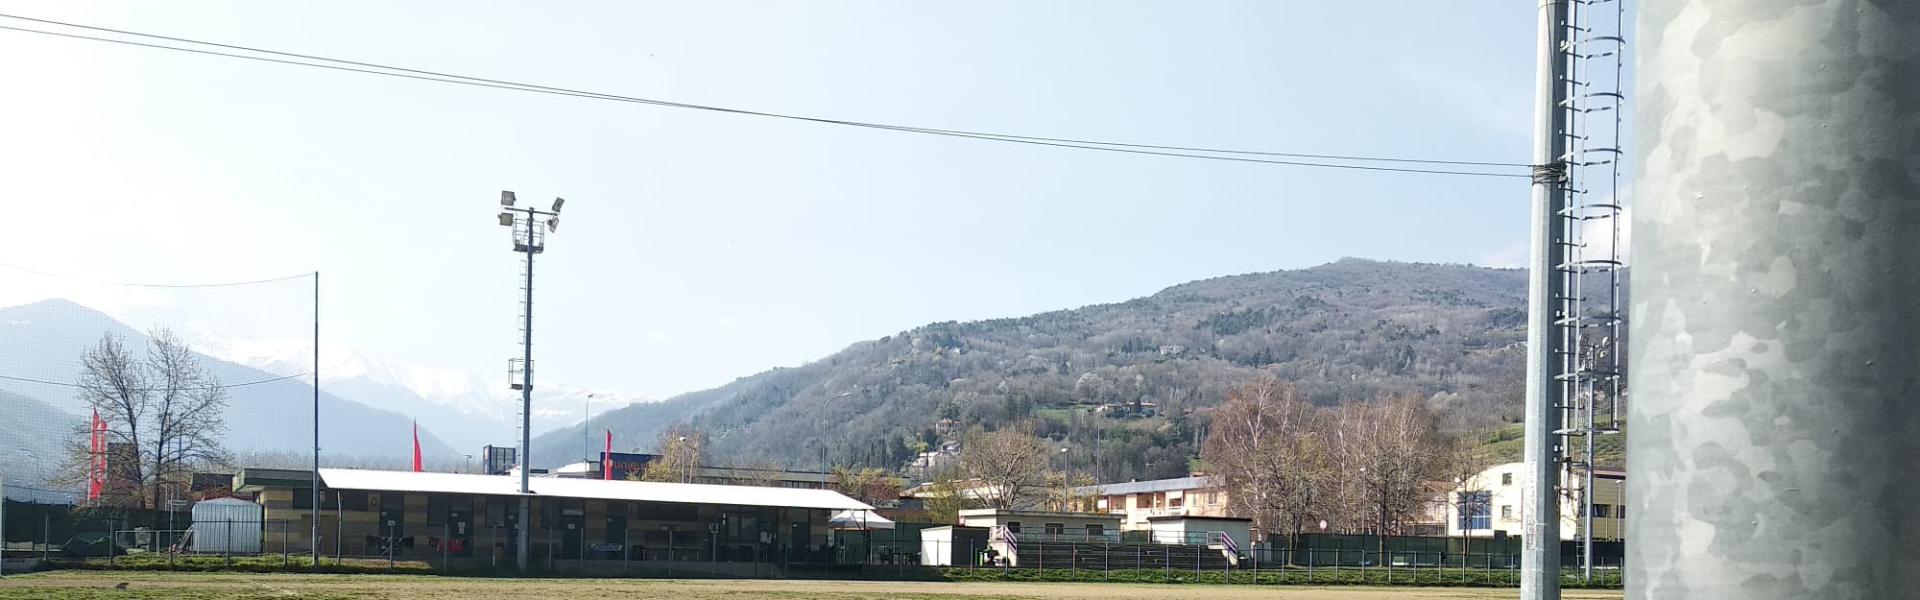 Immagine panoramica dell'impianto sportivo